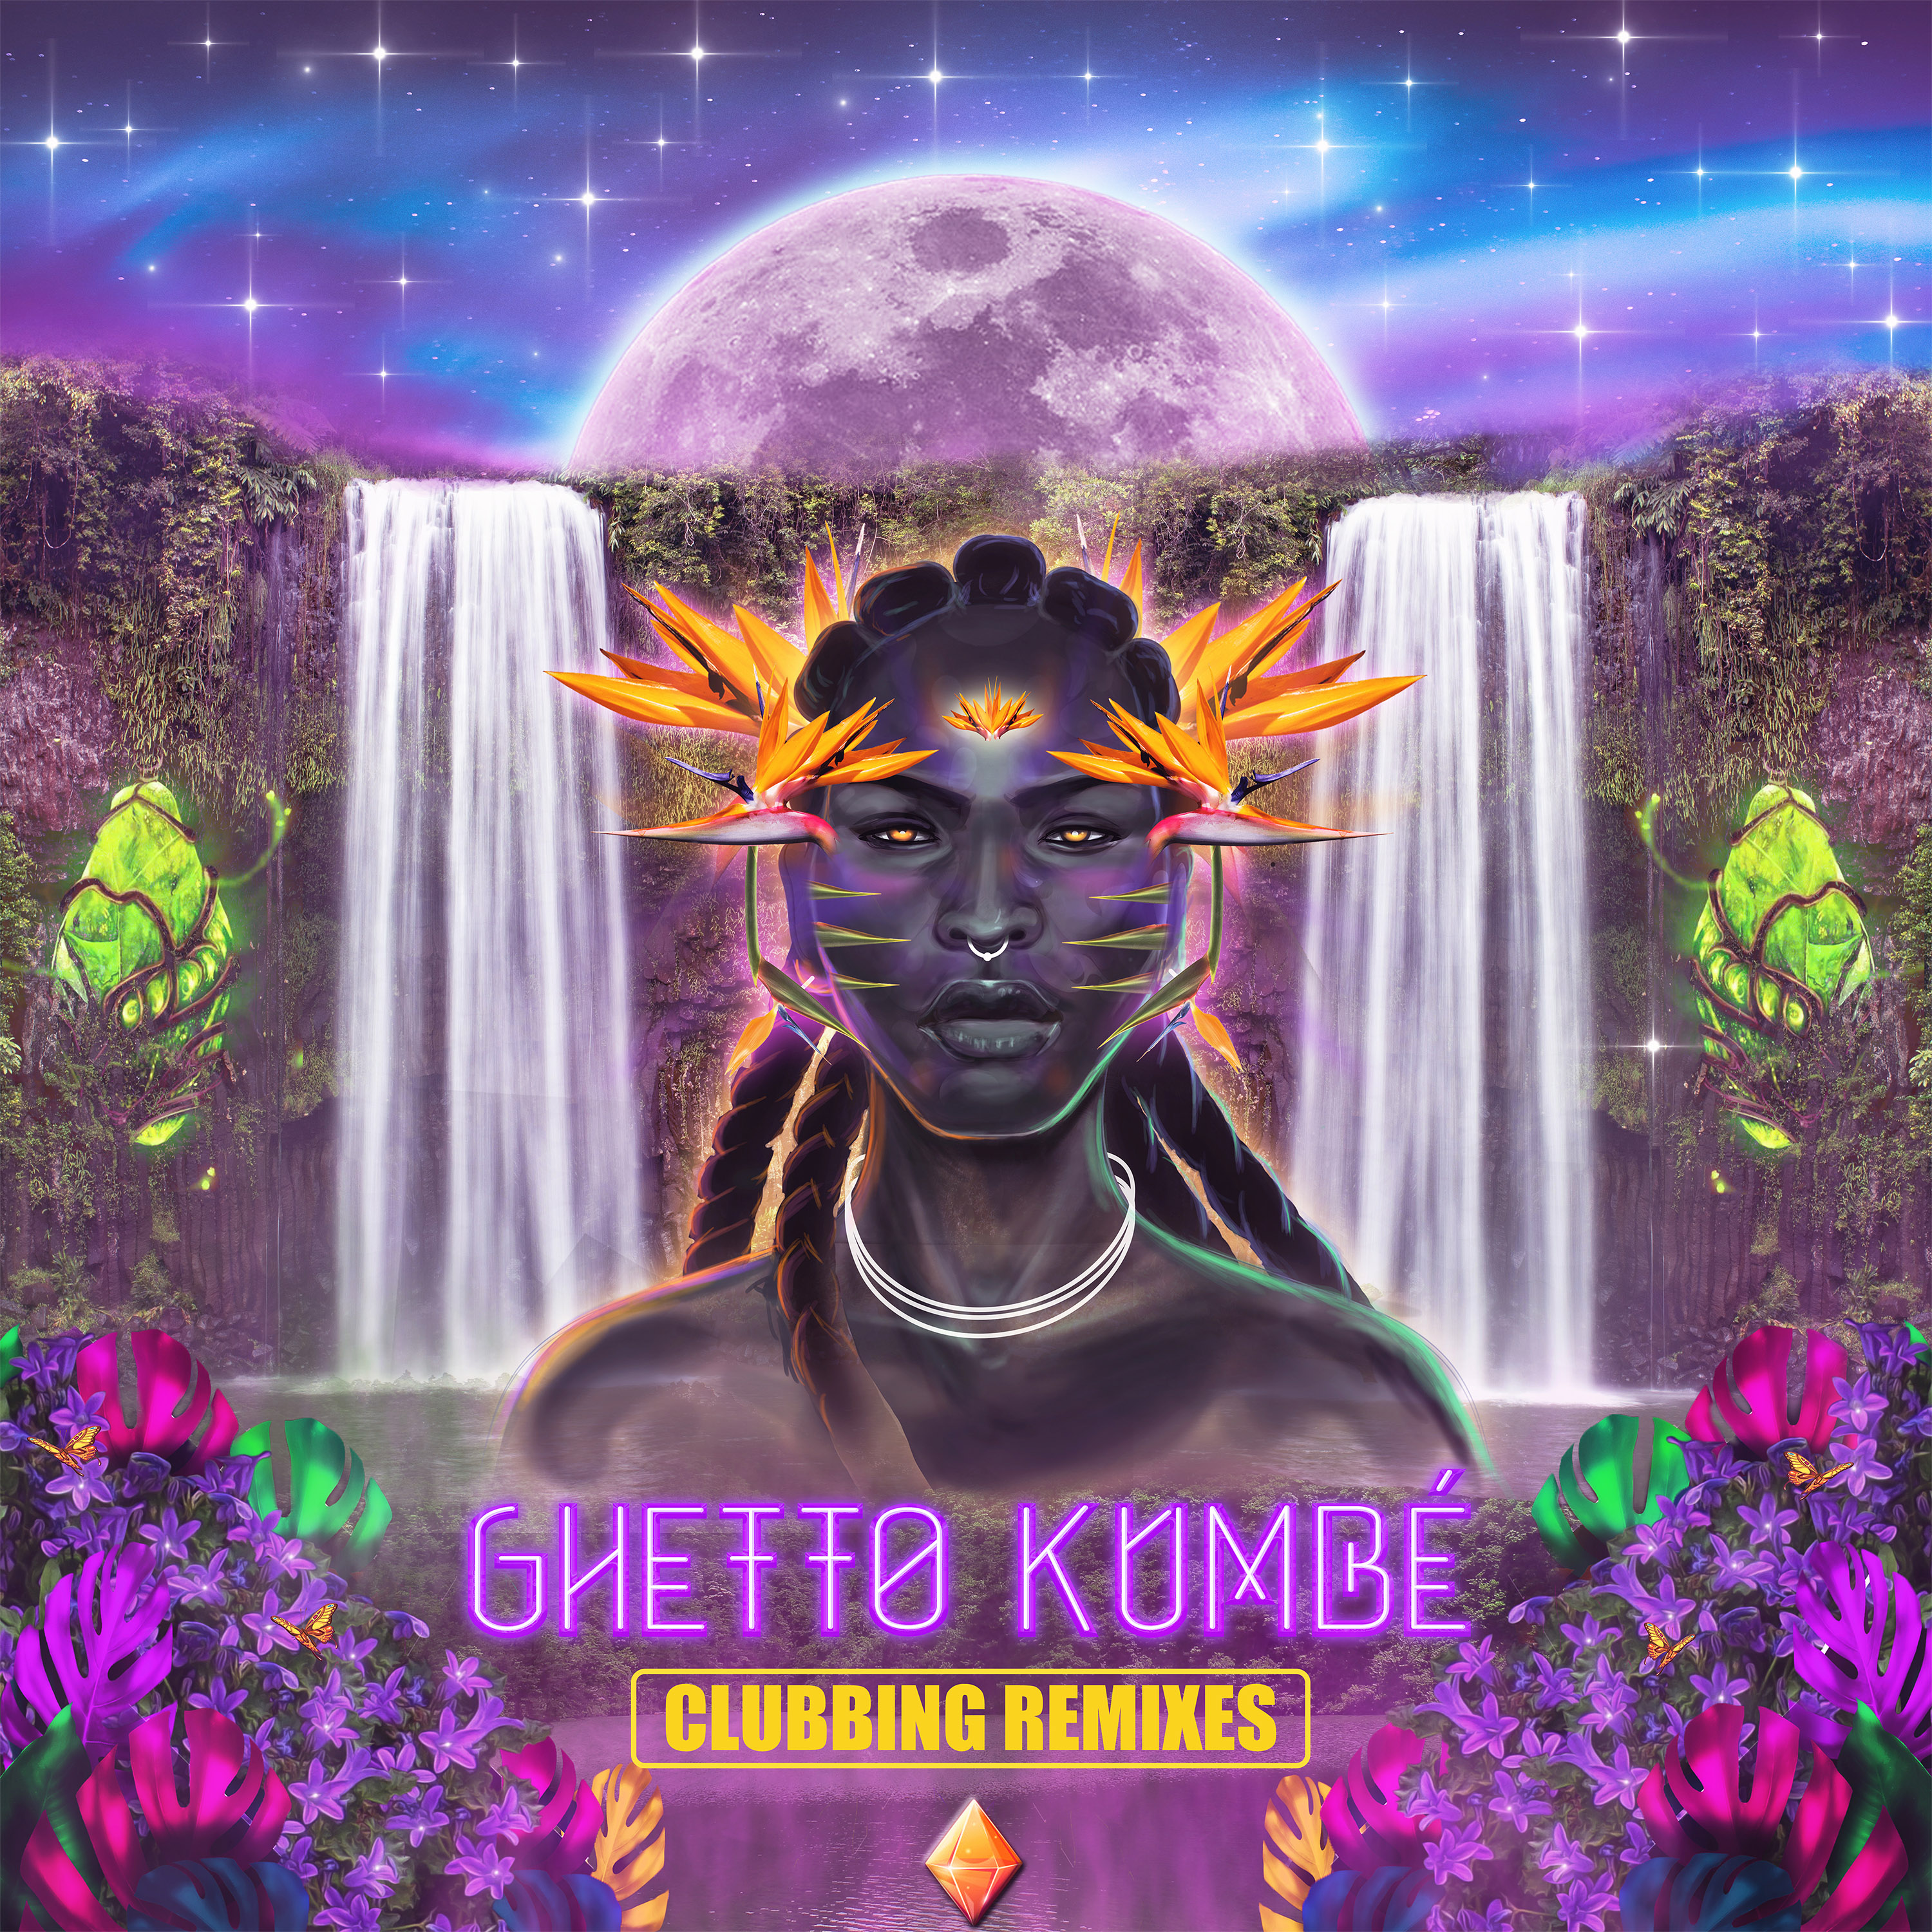 Ghetto Kumbé Clubbing Remixes Out Now!